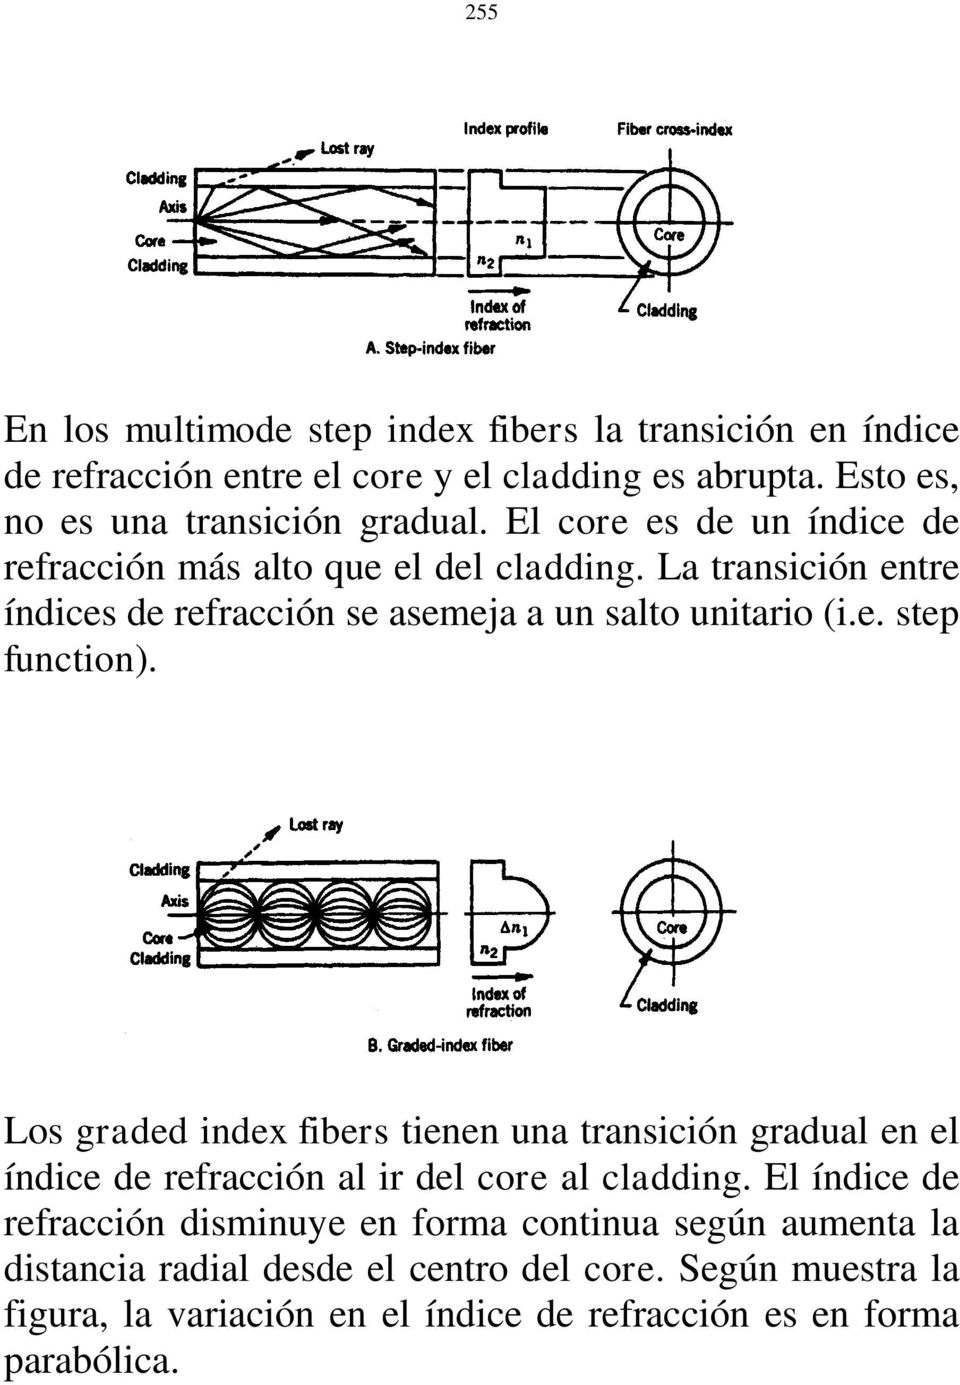 Los graded index fibers tienen una transición gradual en el índice de refracción al ir del core al cladding.